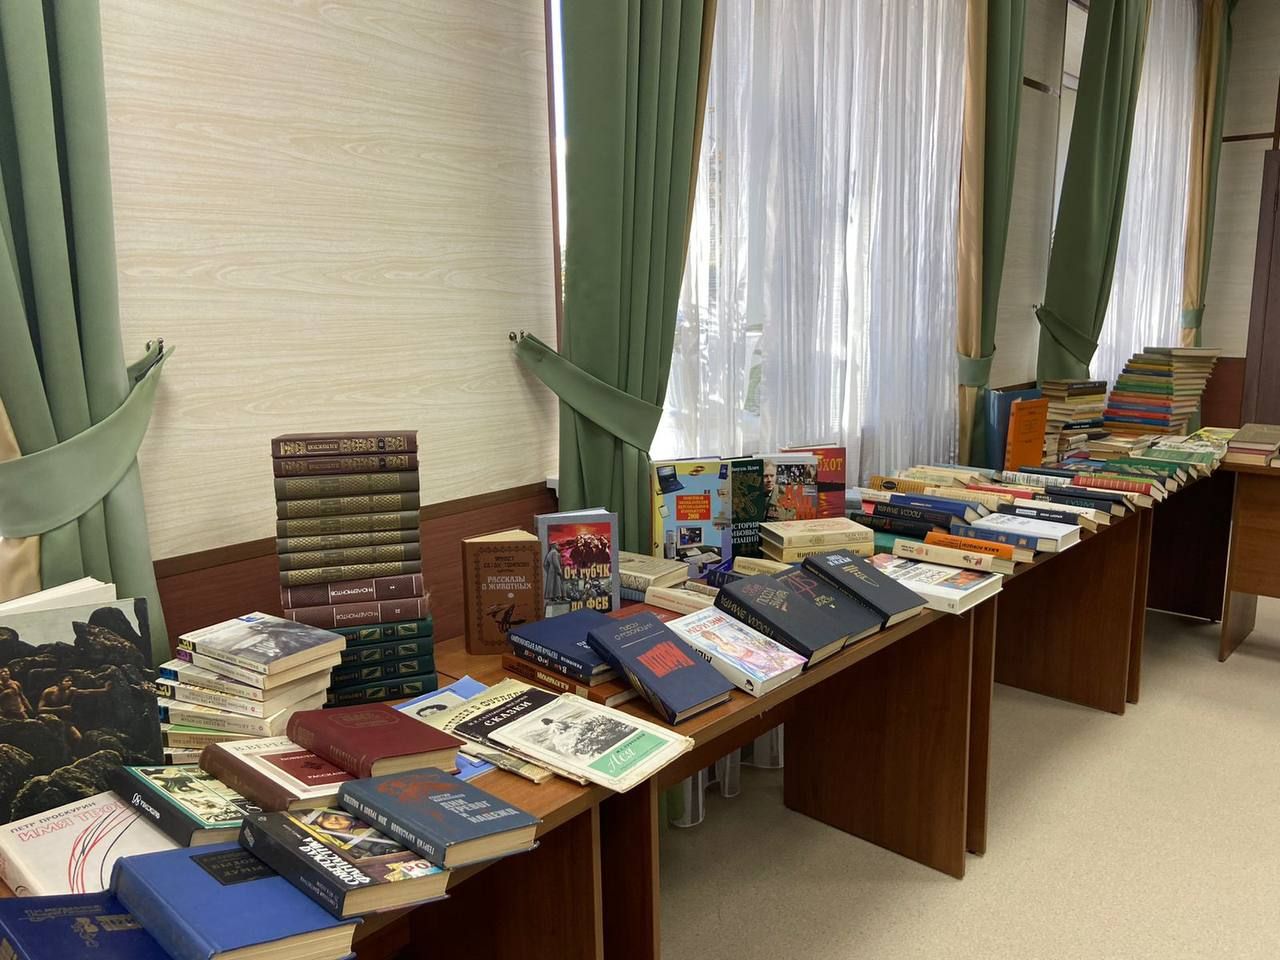 Семья главы района Радмира Беляева передала в фонд библиотеки более 500 книг